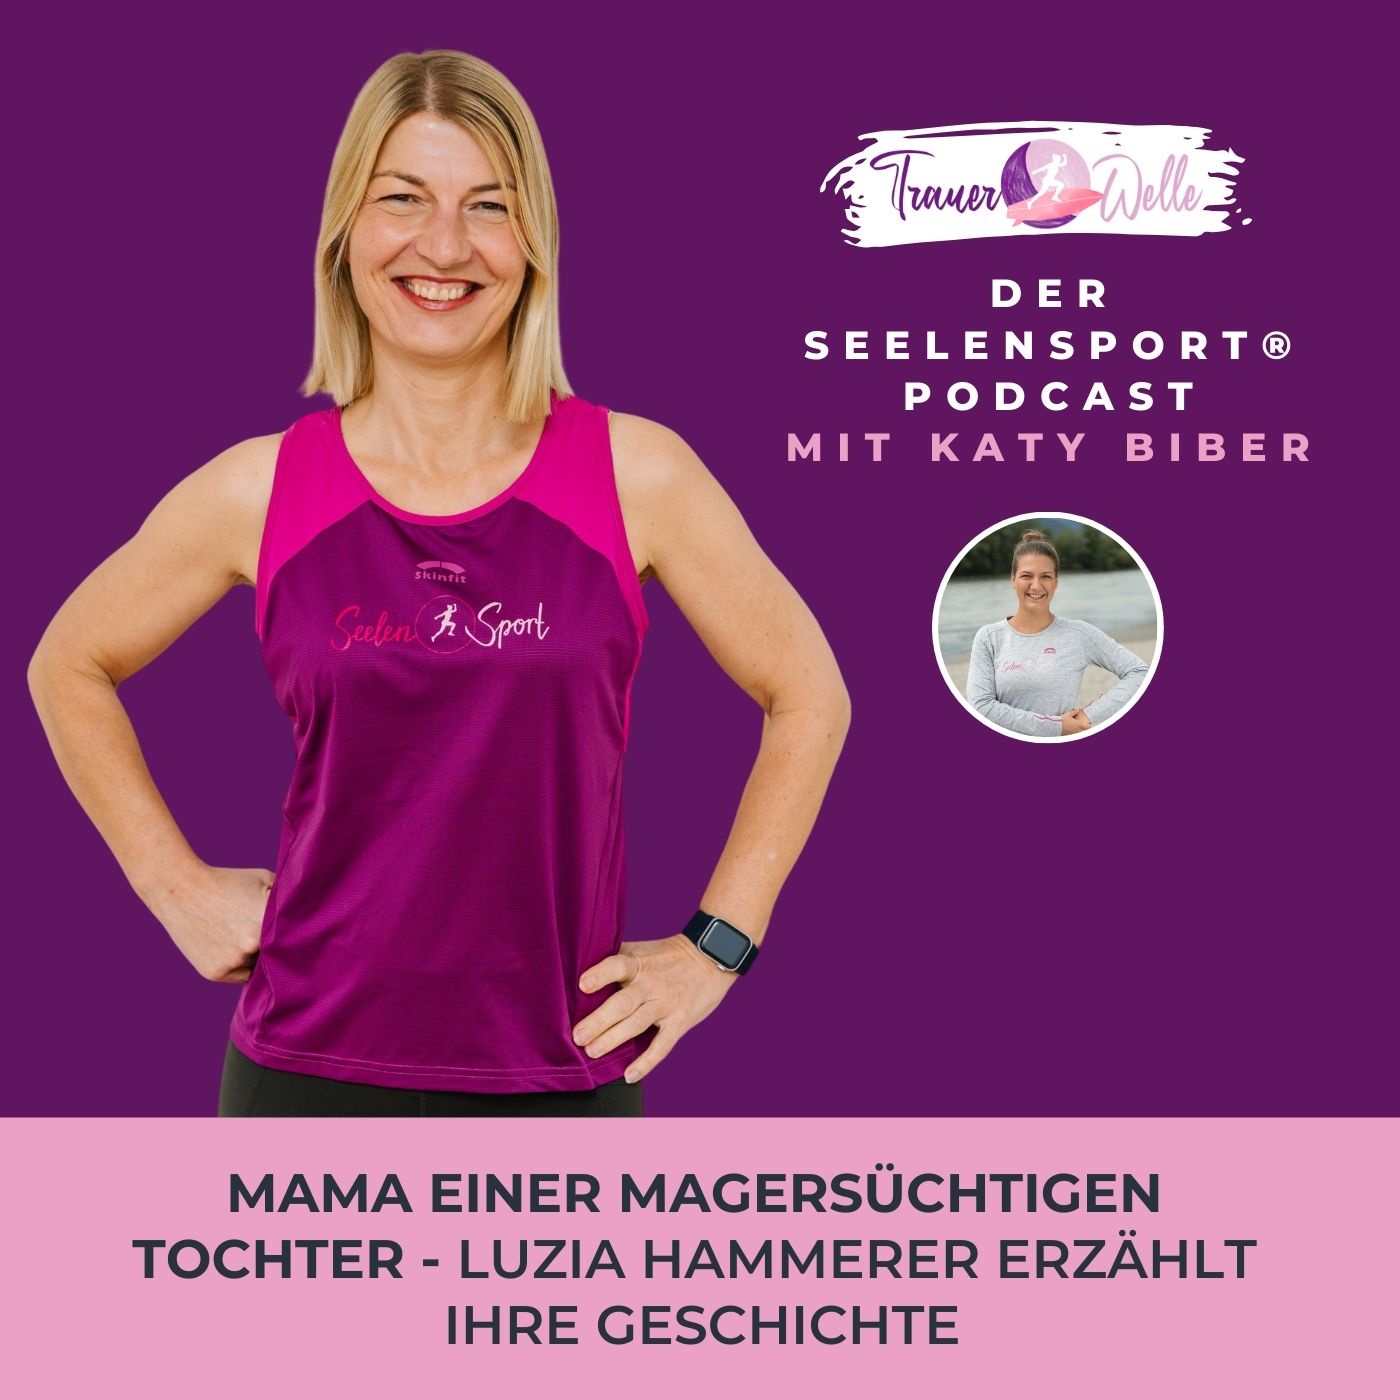 #49 Mama einer magersüchtigen Tochter - Luzia Hammerer erzählt ihre Geschichte